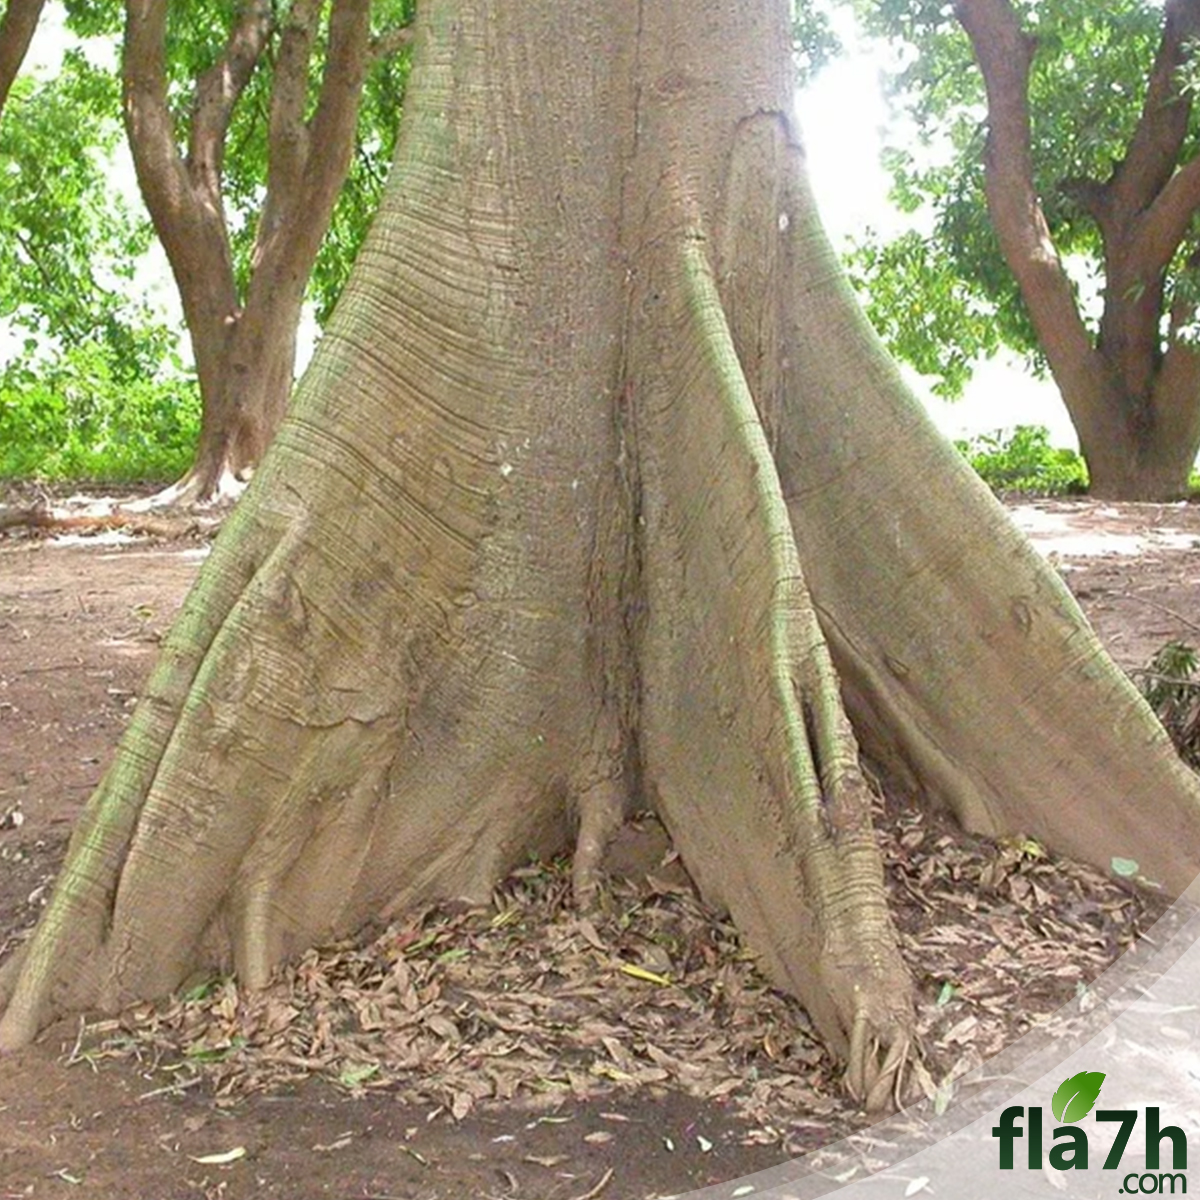 بذور شجرة الكابوك - 45 بذرة - Ceiba pentandra